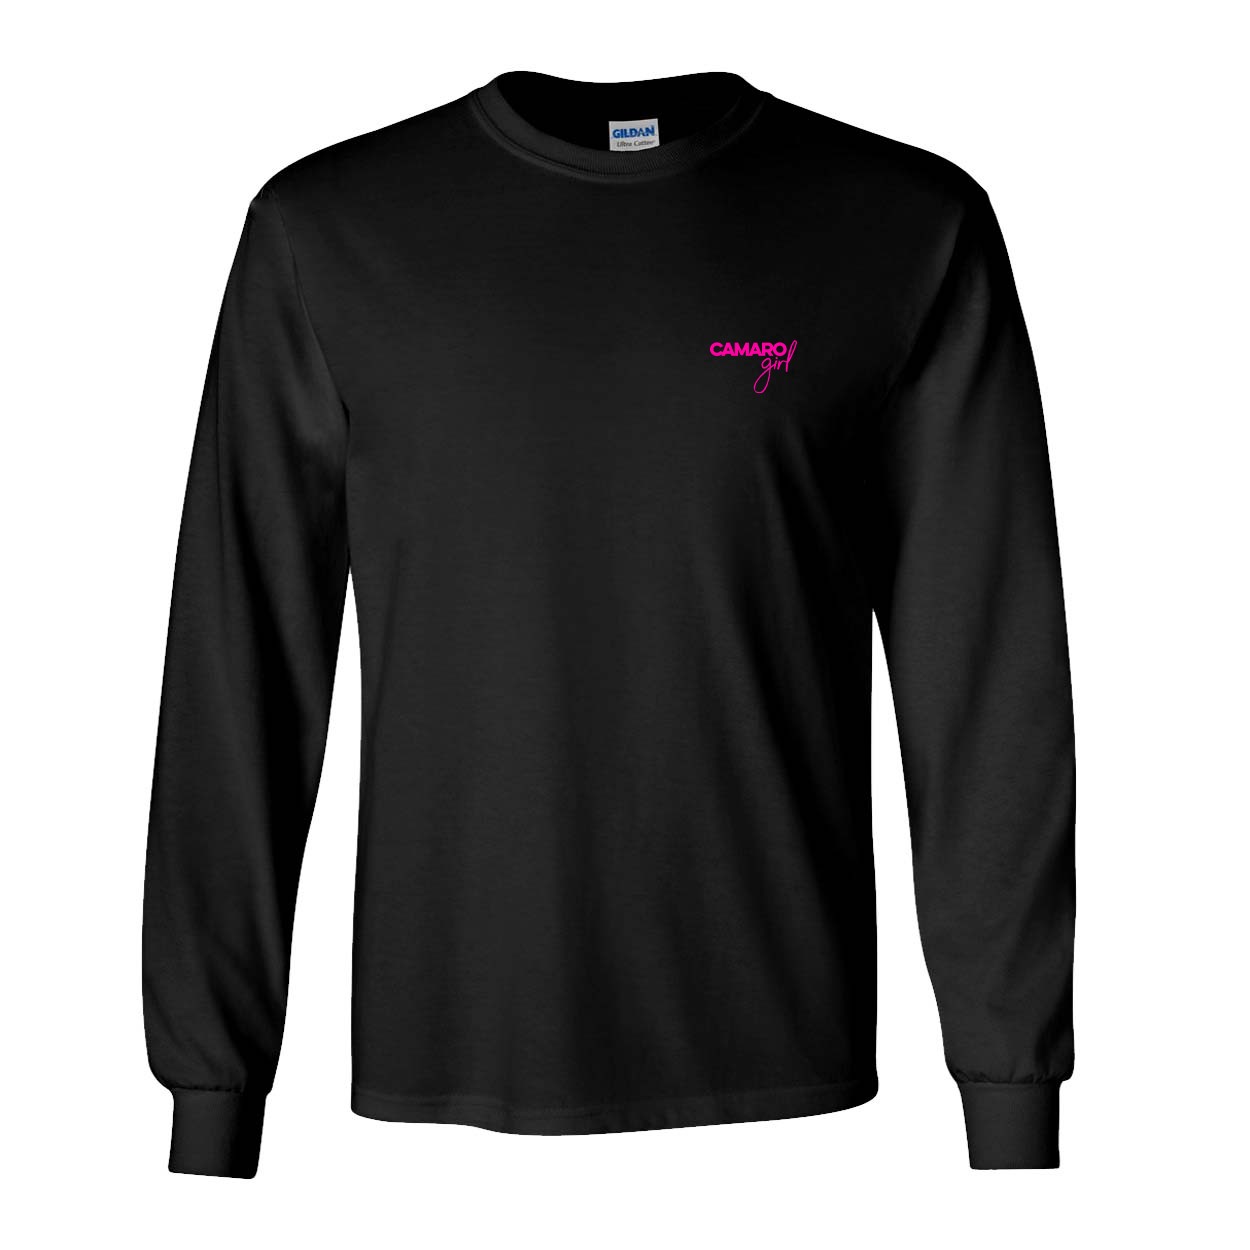 Camaro Minnesota Night Out Camaro Girl Long Sleeve T-Shirt Black (Pink Logo)